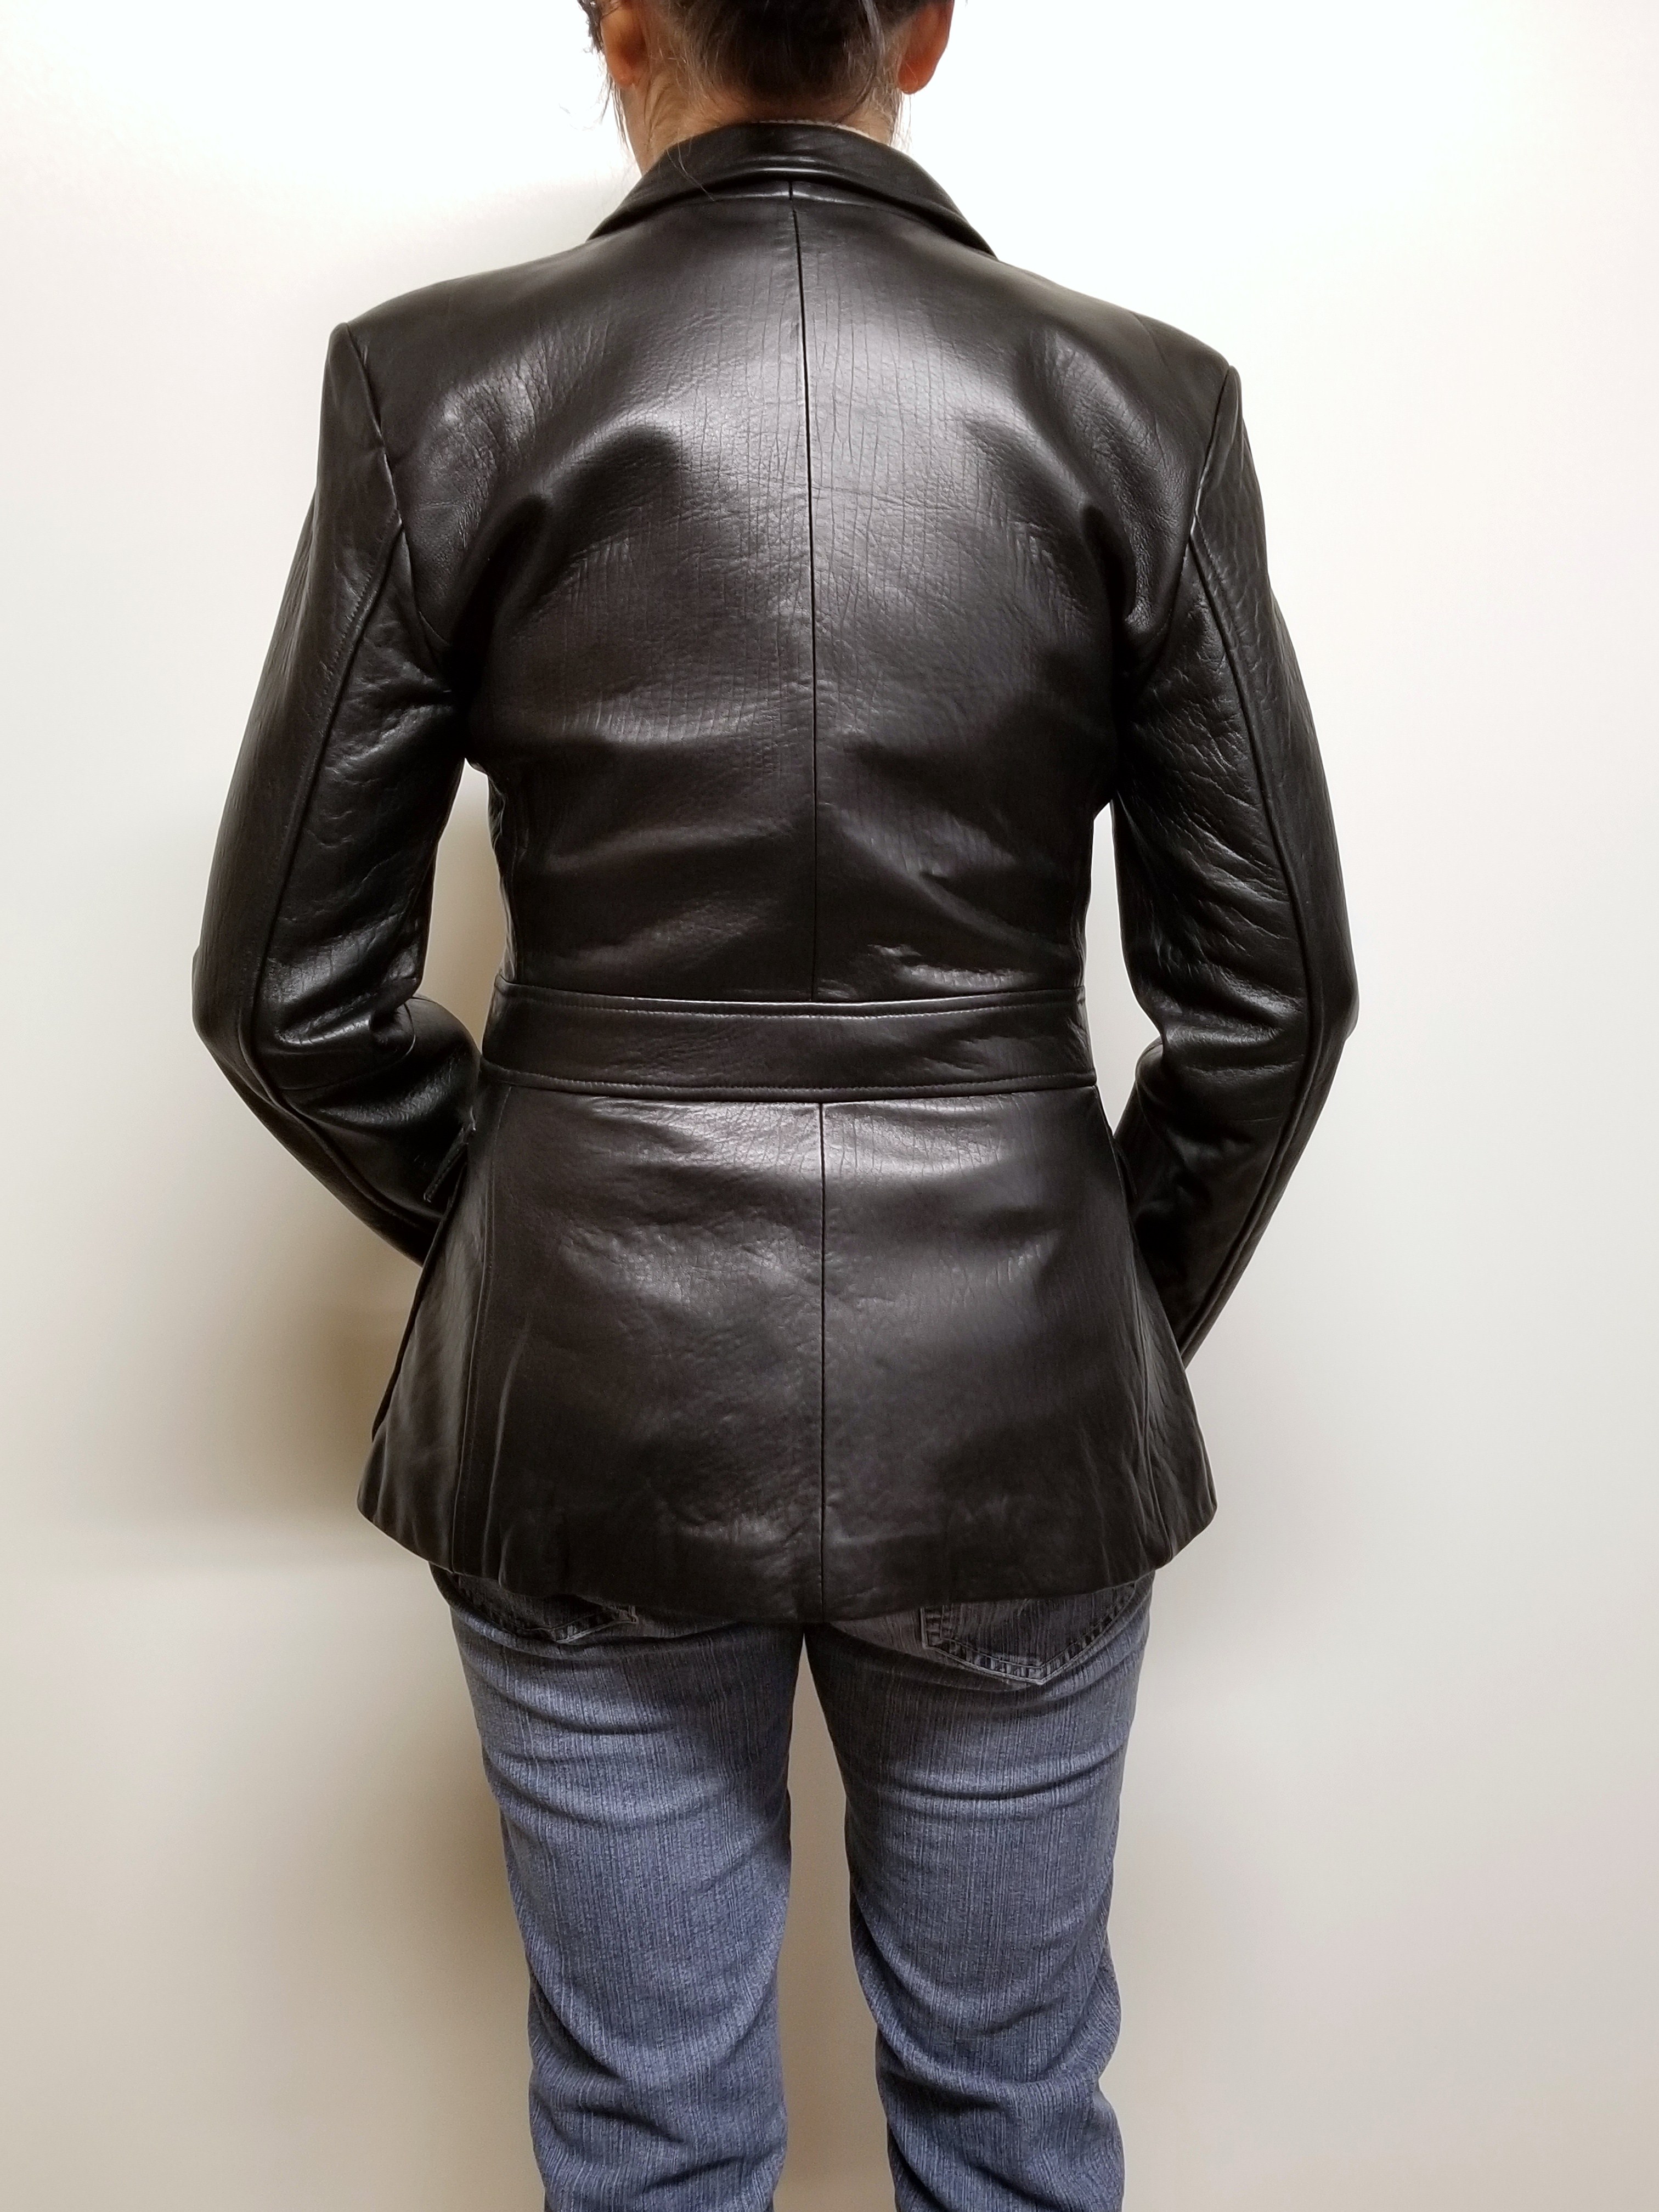 Women Lambskin Leather Blazer Jacket Petite Sizes 4, 6 Women Leather ...